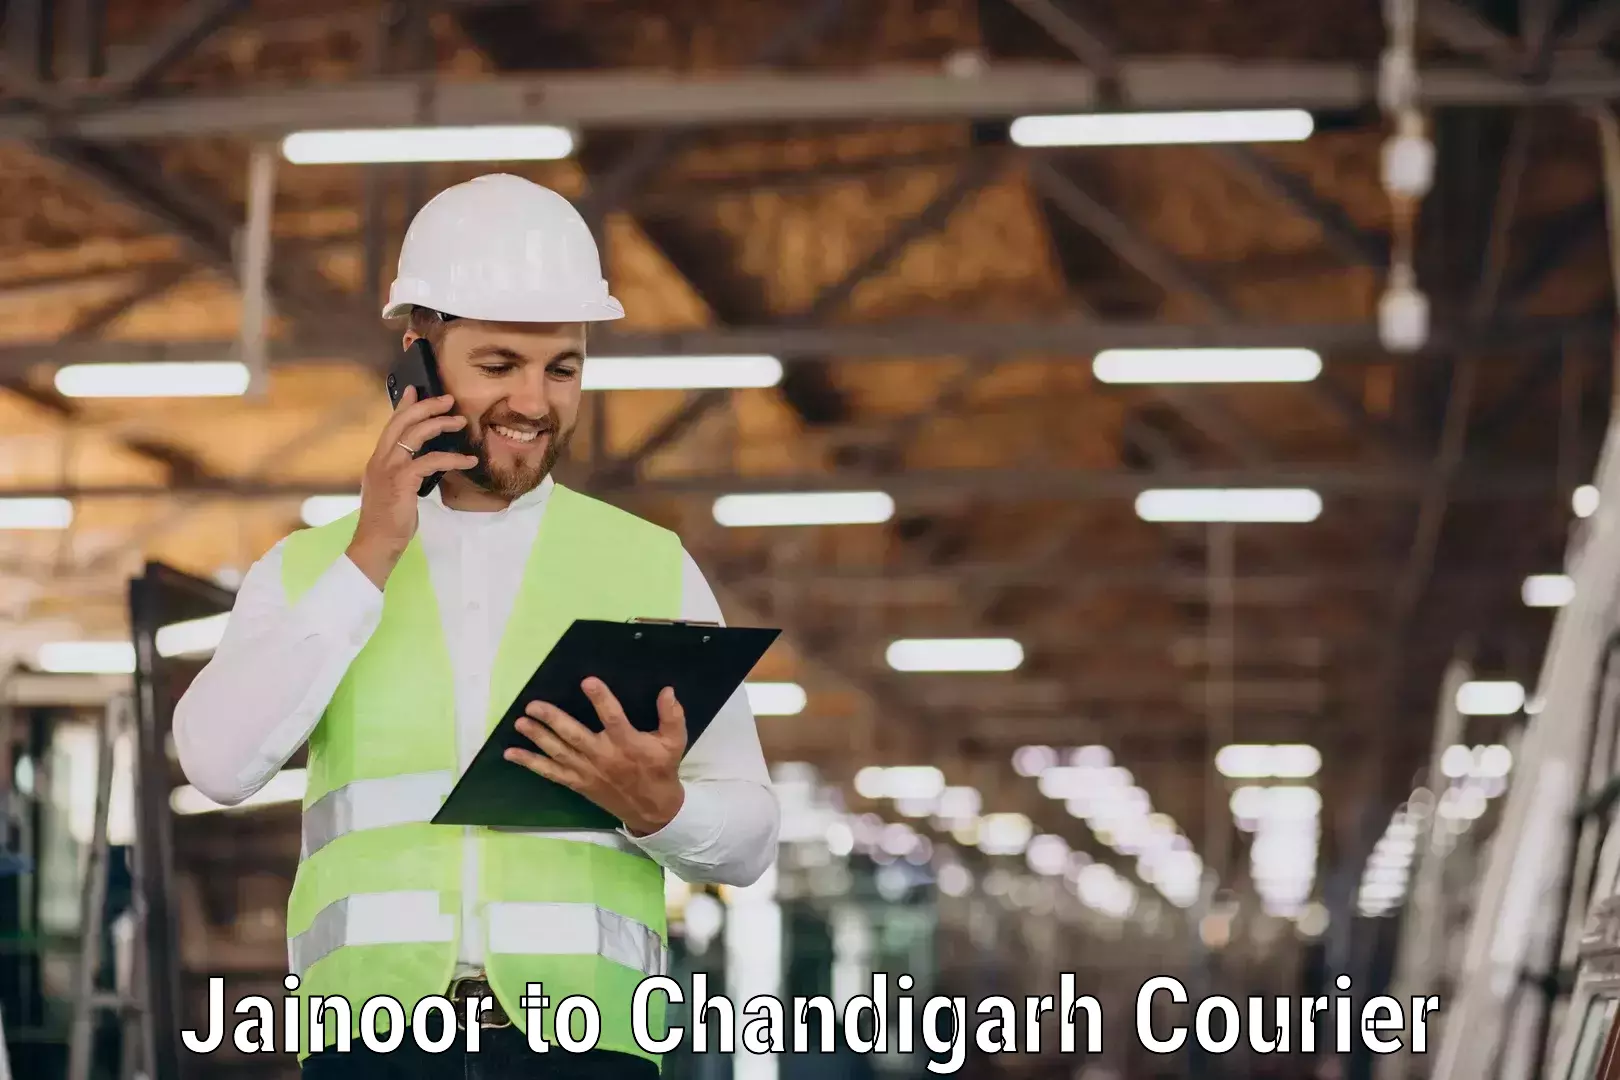 Multi-city courier Jainoor to Chandigarh